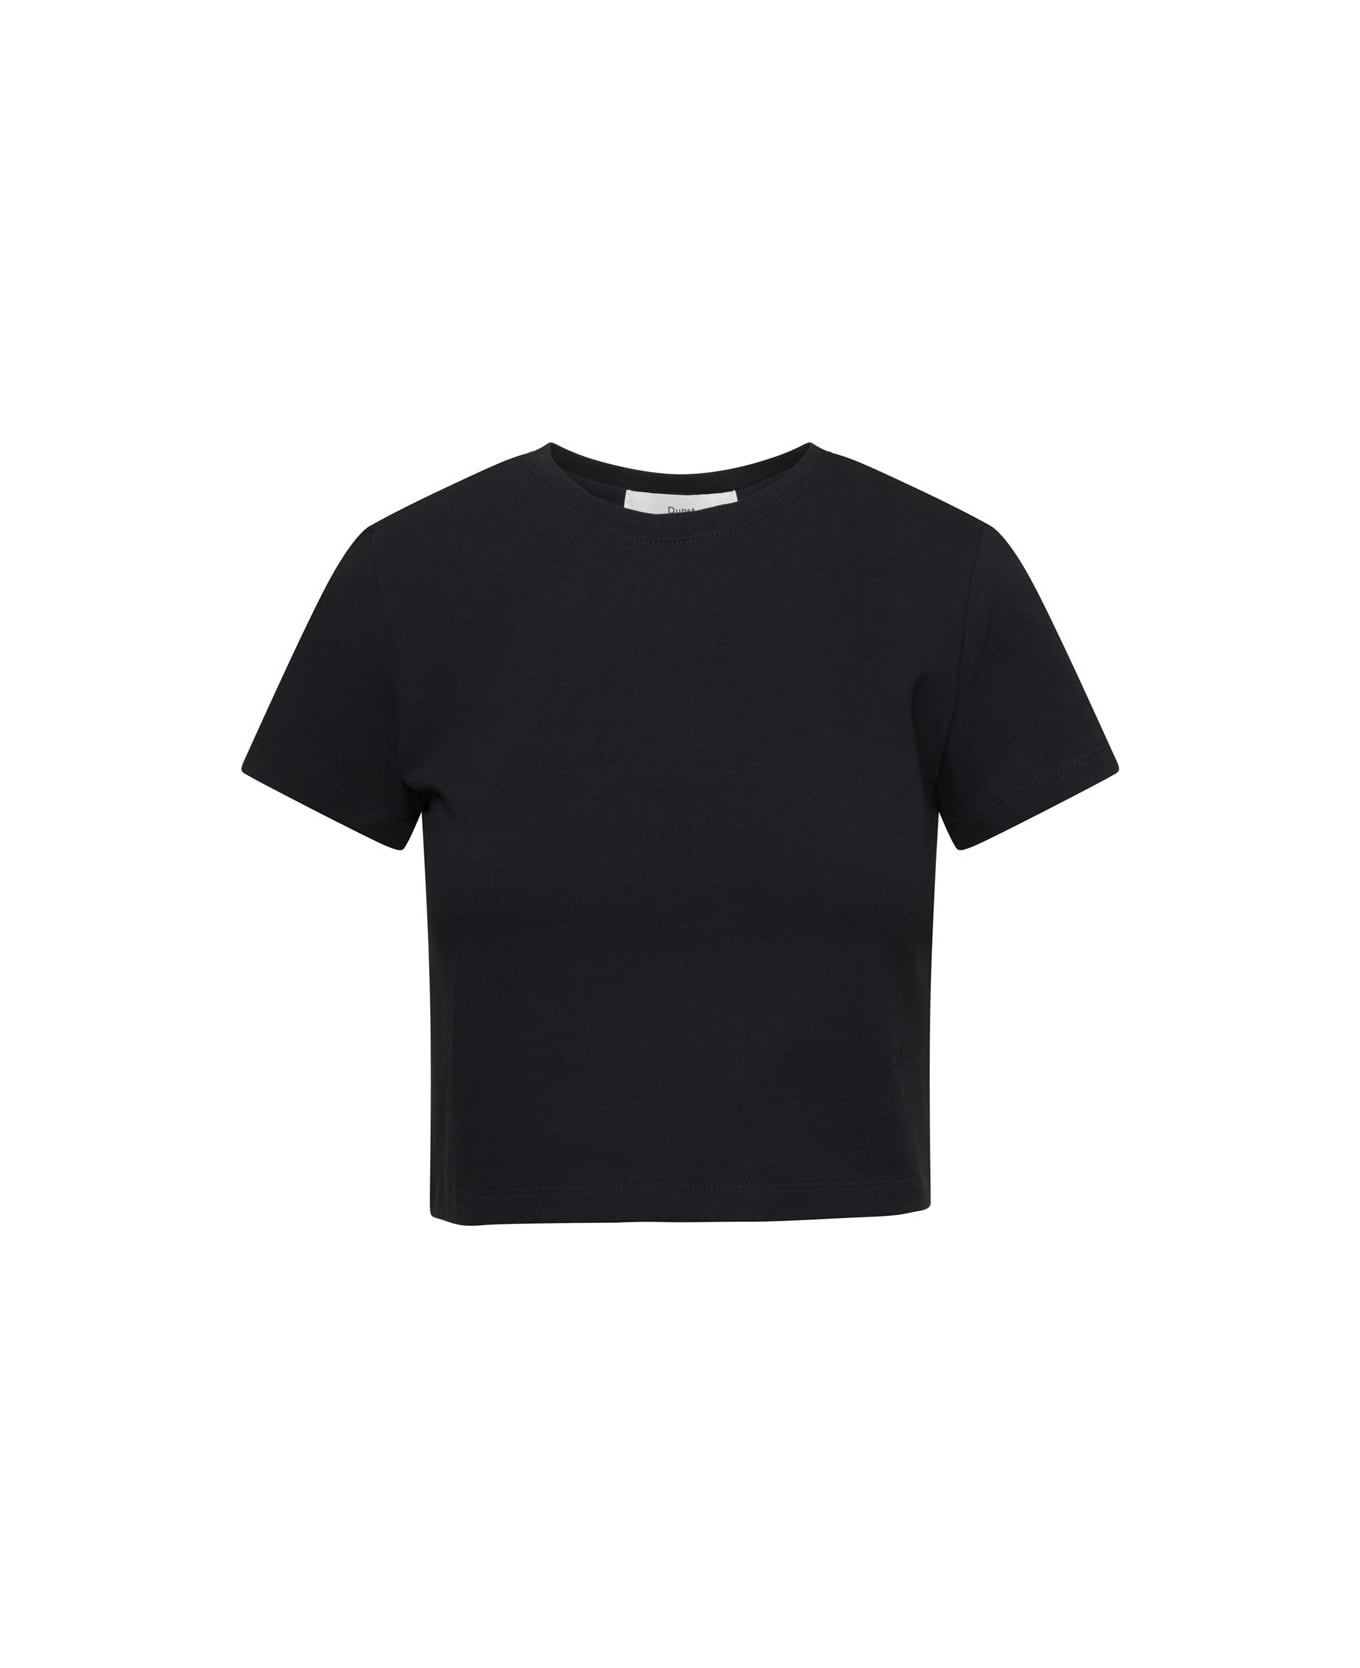 Dunst Black Crewneck Cropped T-shirt In Cotton Woman - Black